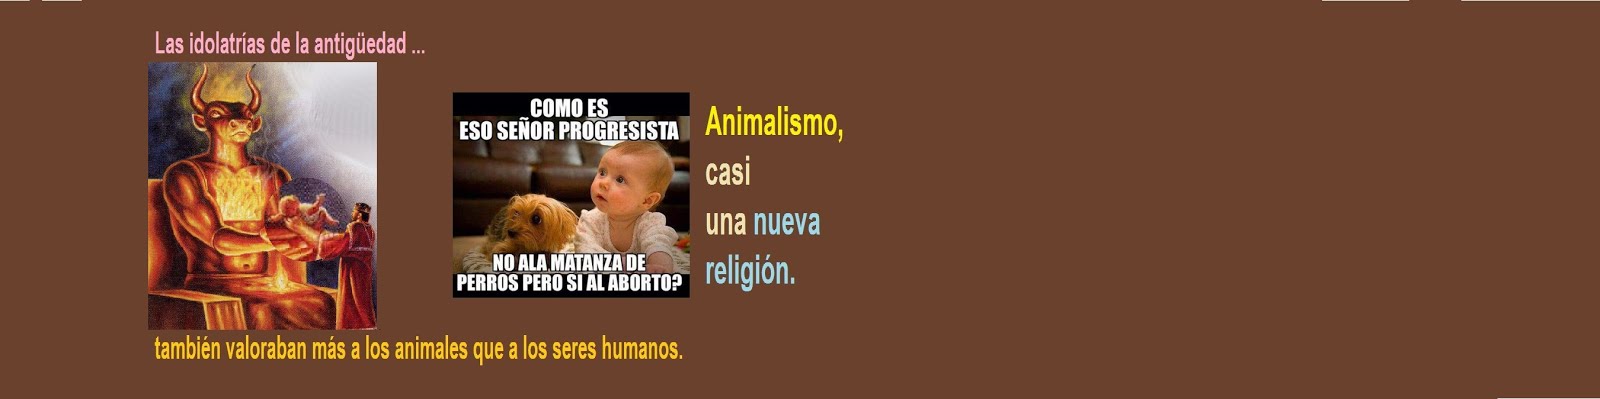 ANIMALISMO, CASI UNA NUEVA RELIGIÓN.